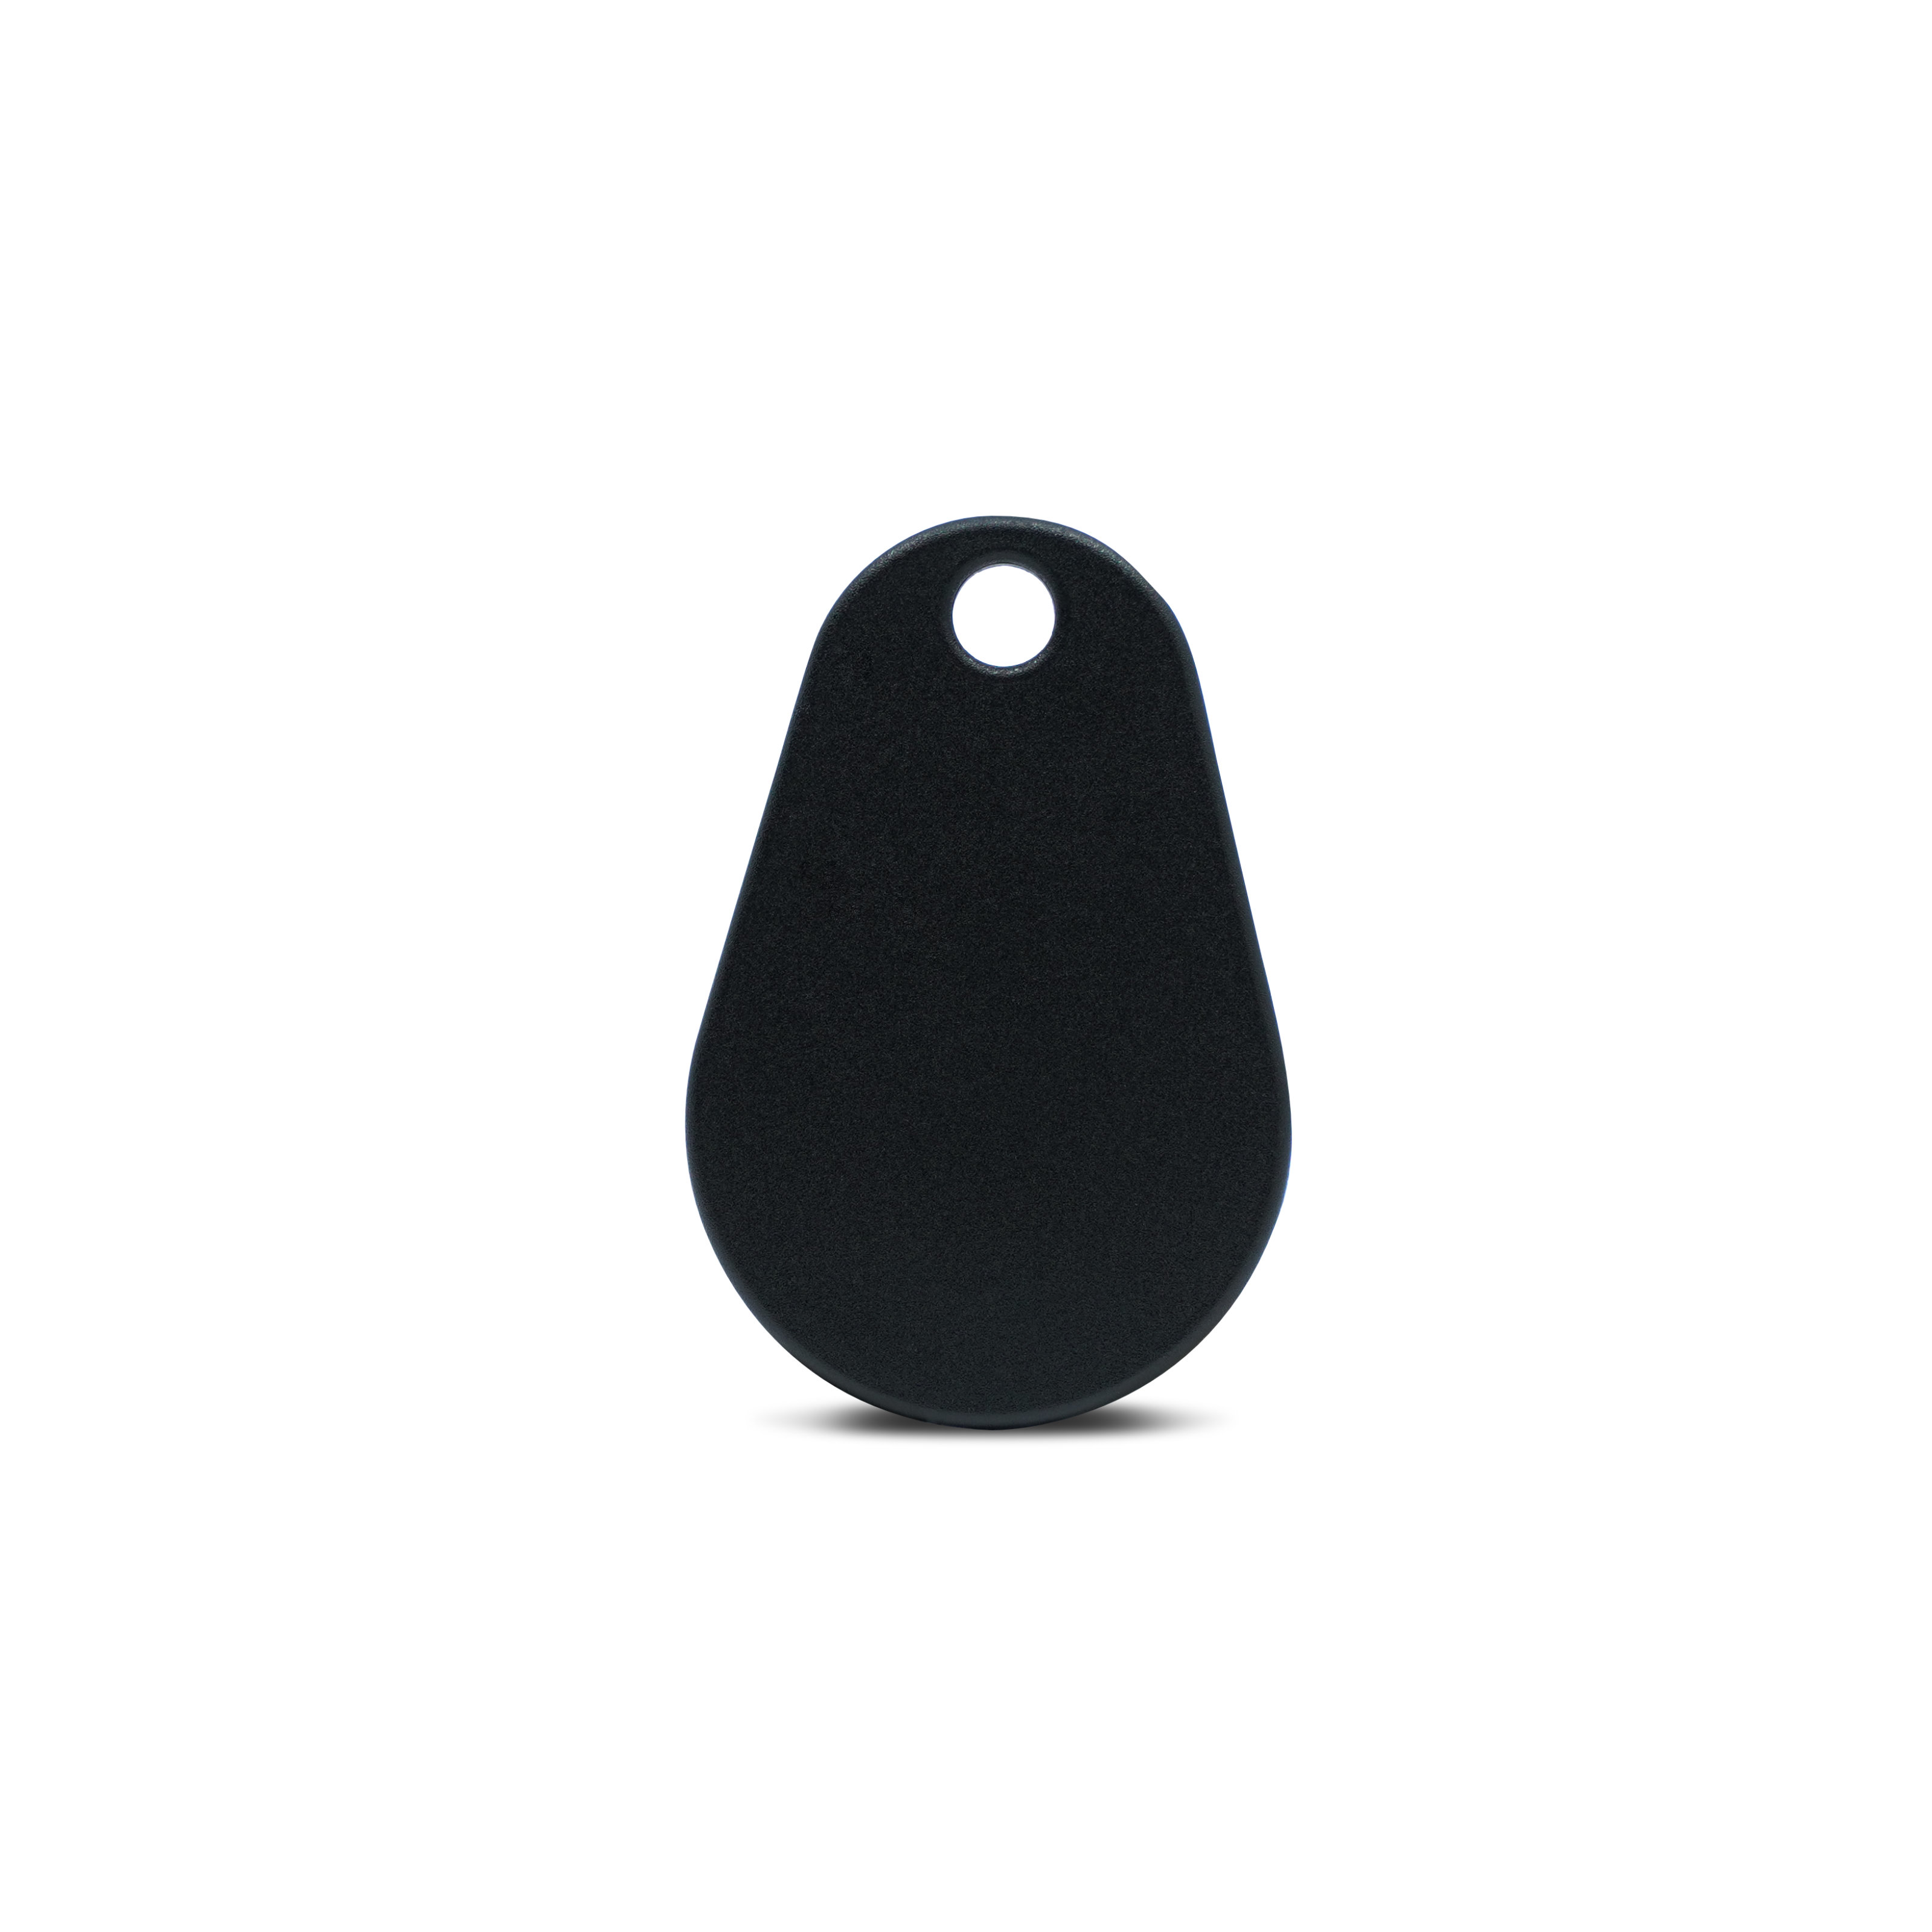 Vorderseite NFC Schlüsselanhänger in schwarz aus Polyamid